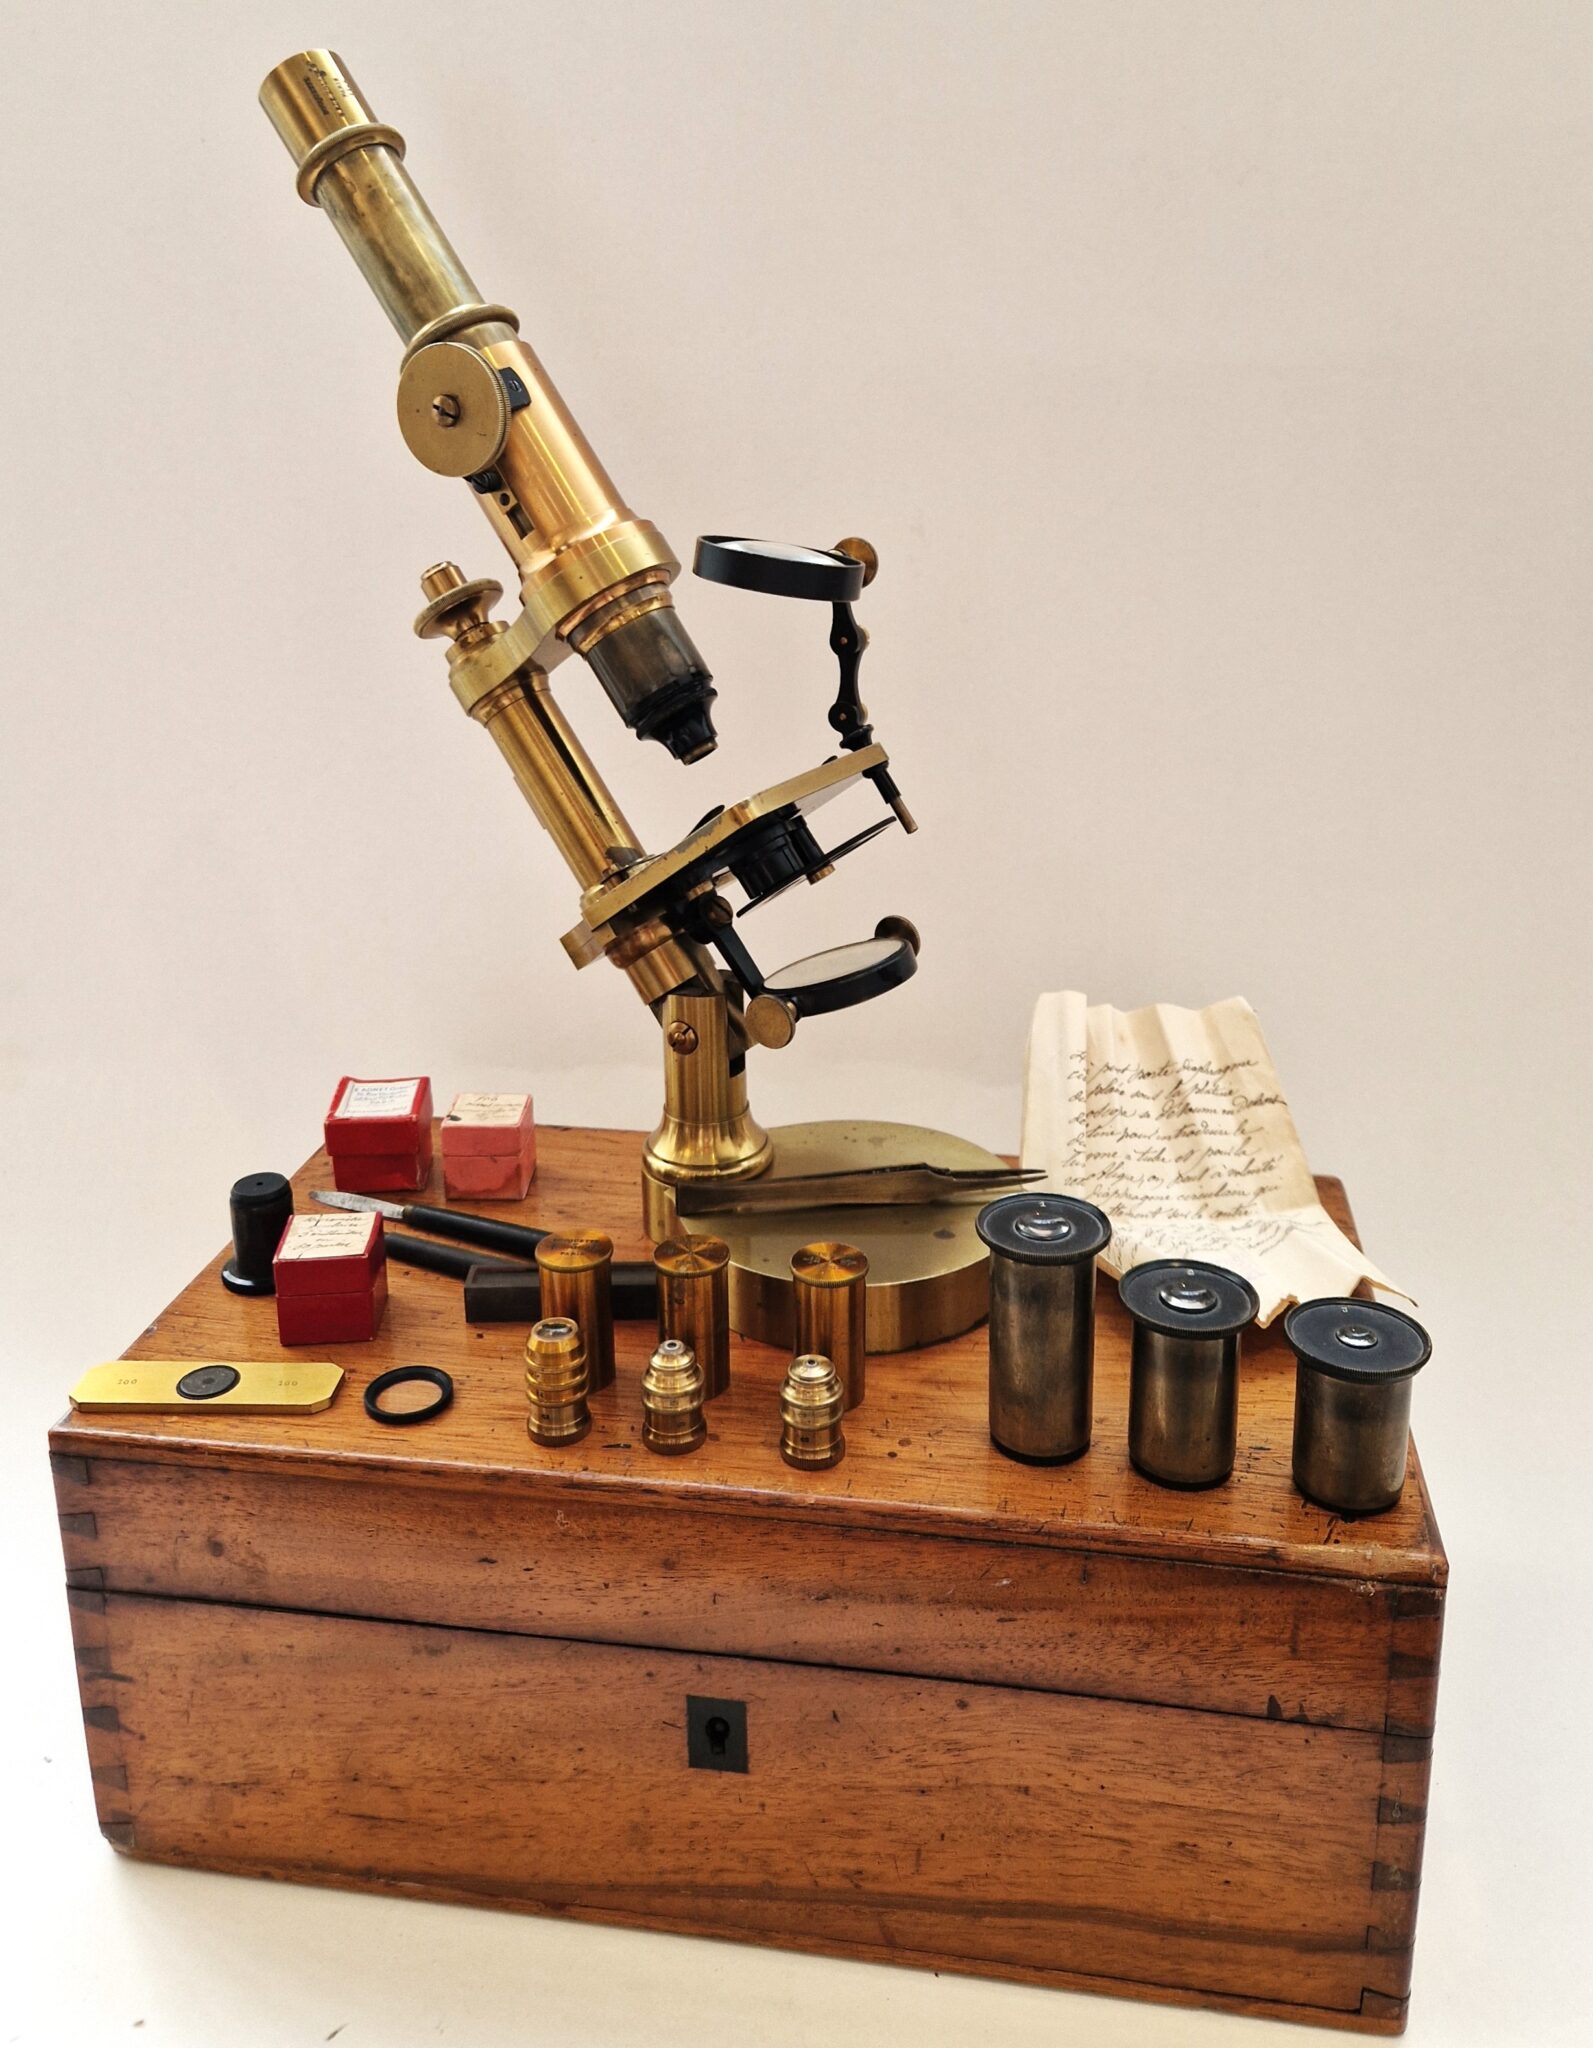 Rare patented microscope by Bouquette in Paris, circa 1870